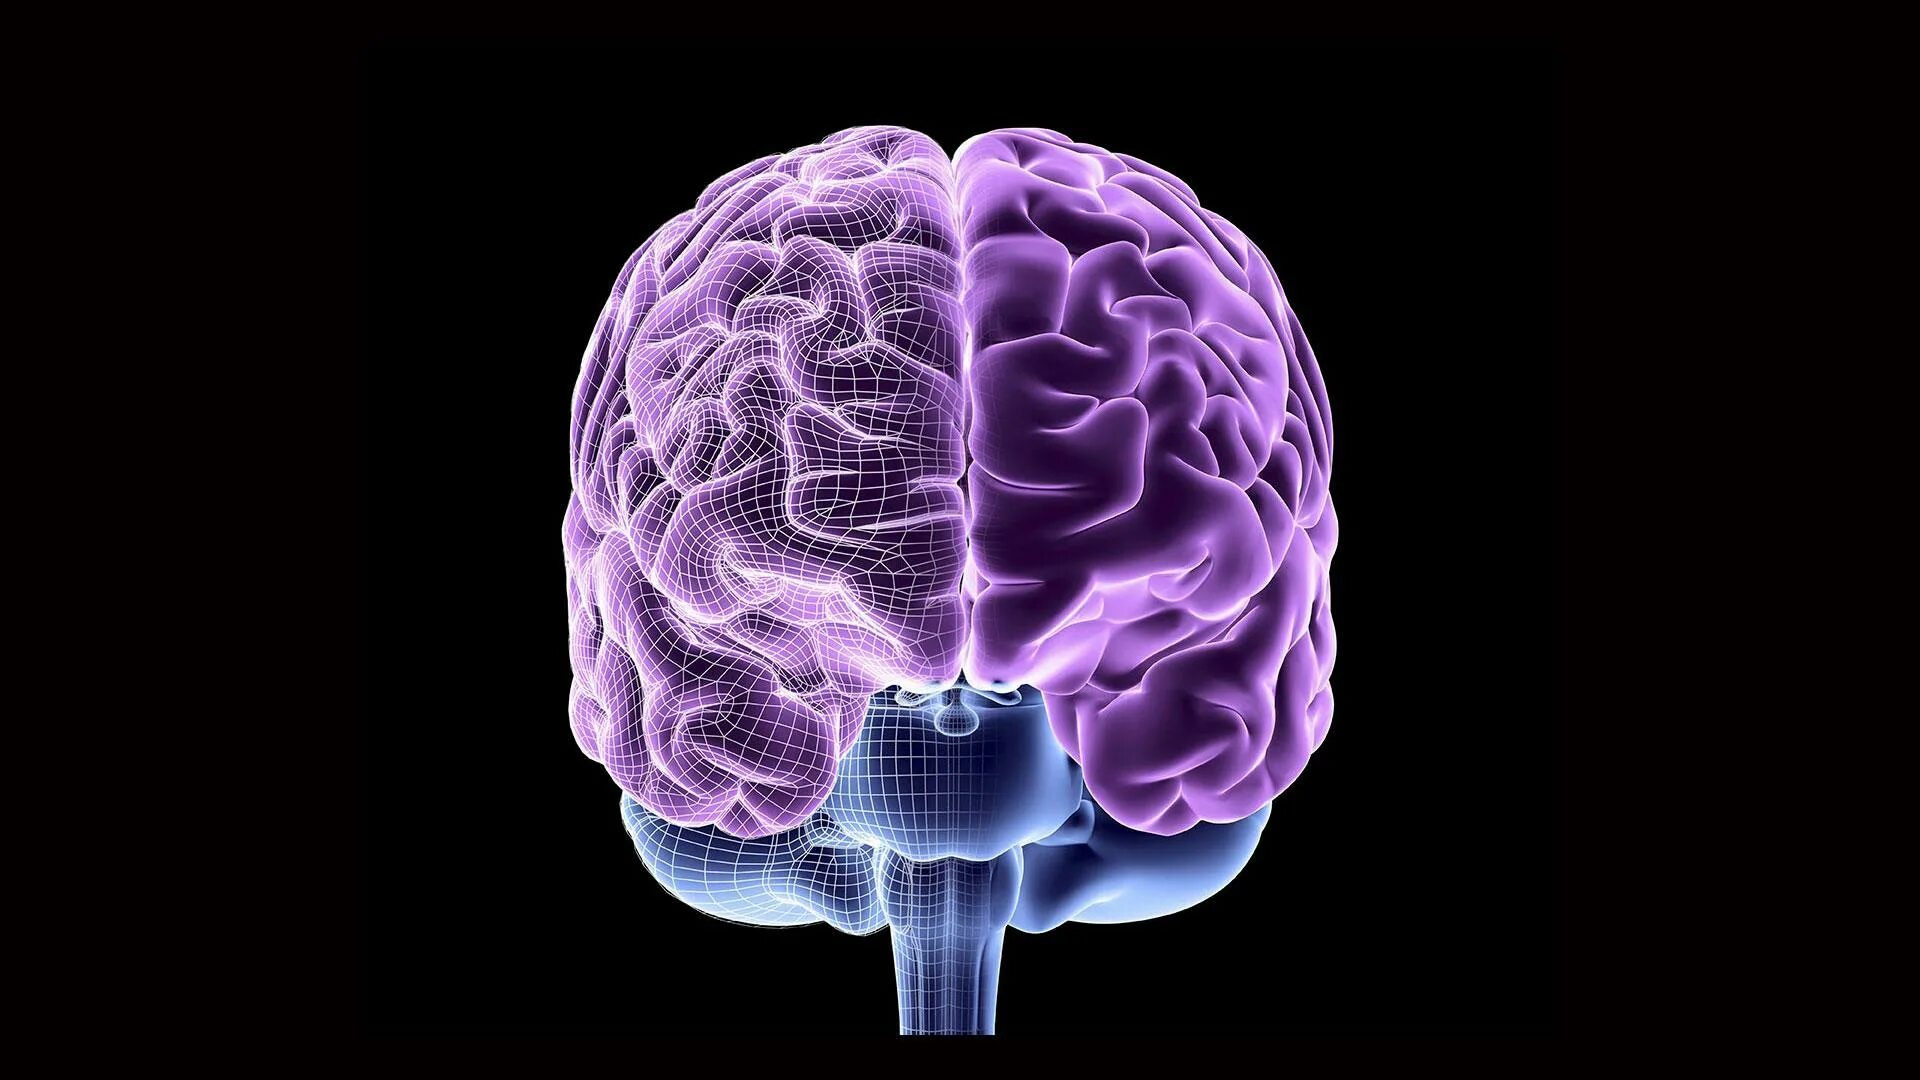 7 3 brain. Головной мозг. Компьютерная модель мозга. Моделирование мозга.